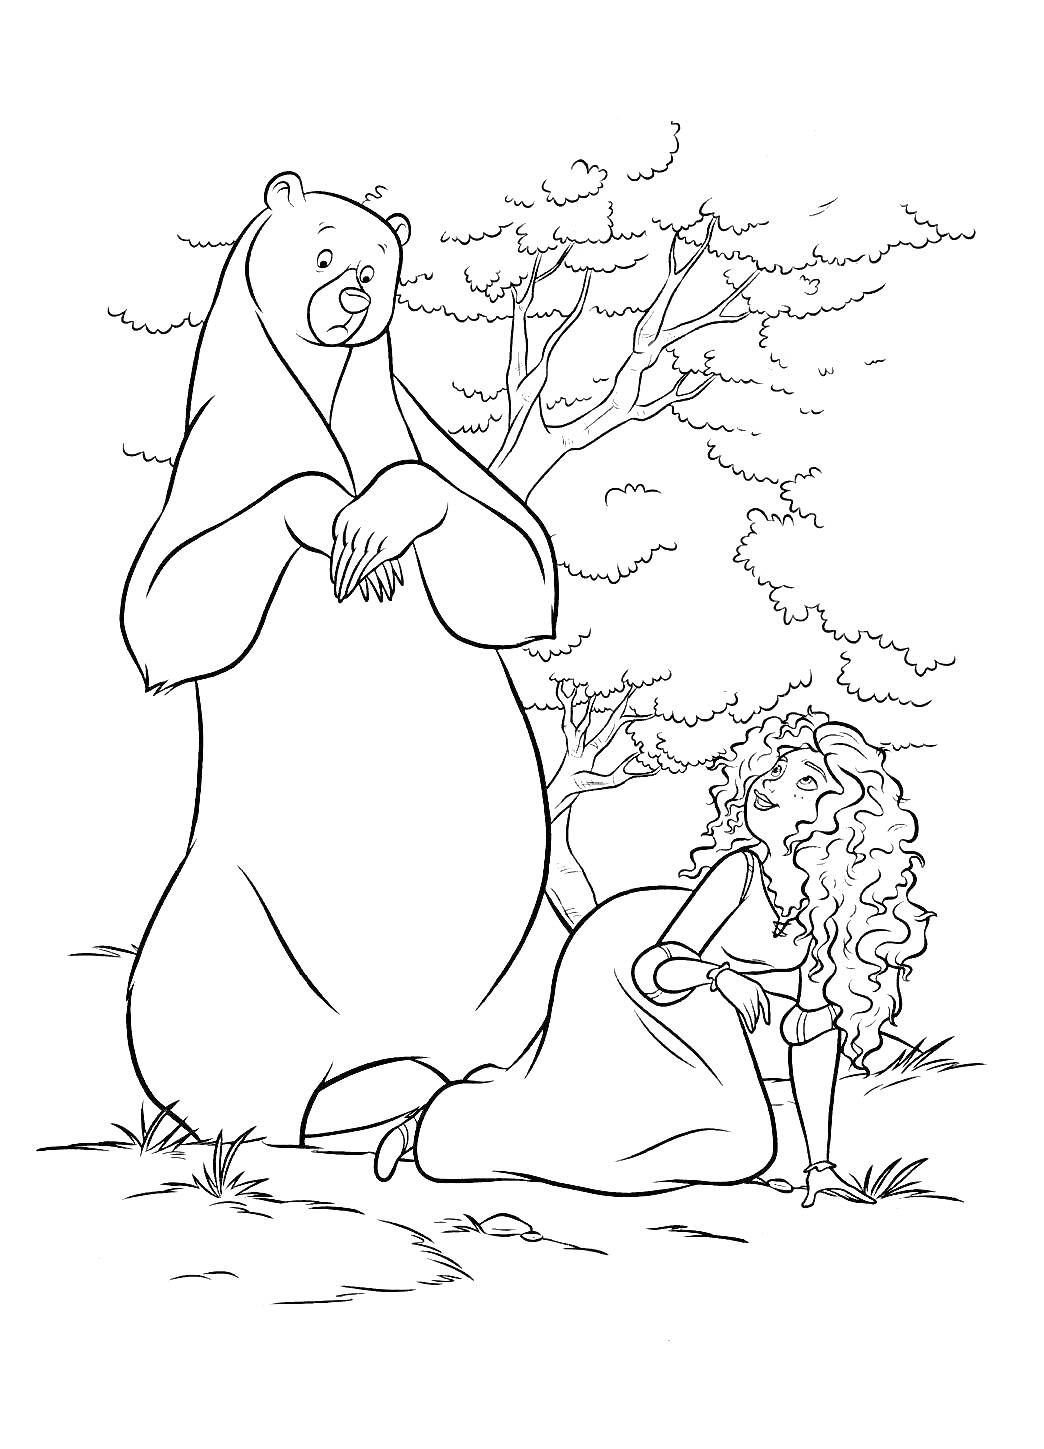 Медведь и девушка с кудрявыми волосами на фоне деревьев